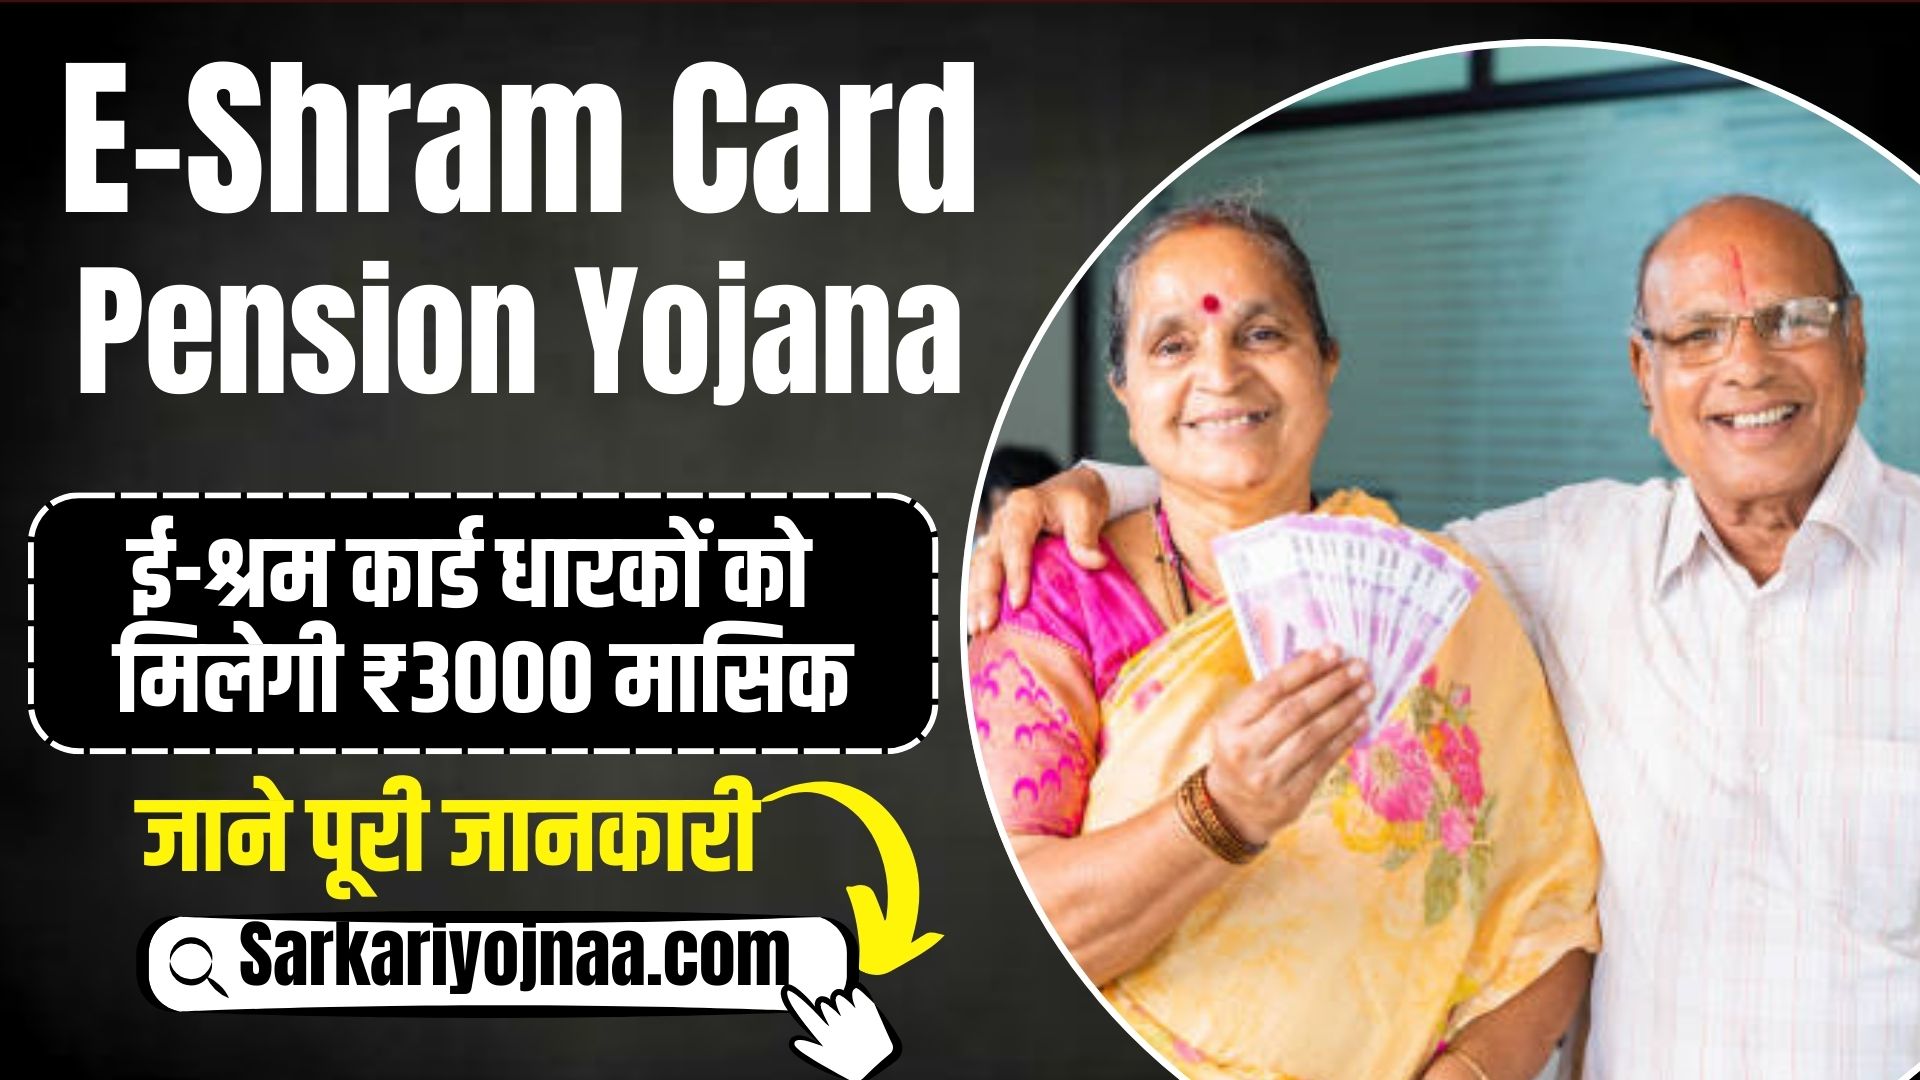 E Shram Card Pension Yojana 2024